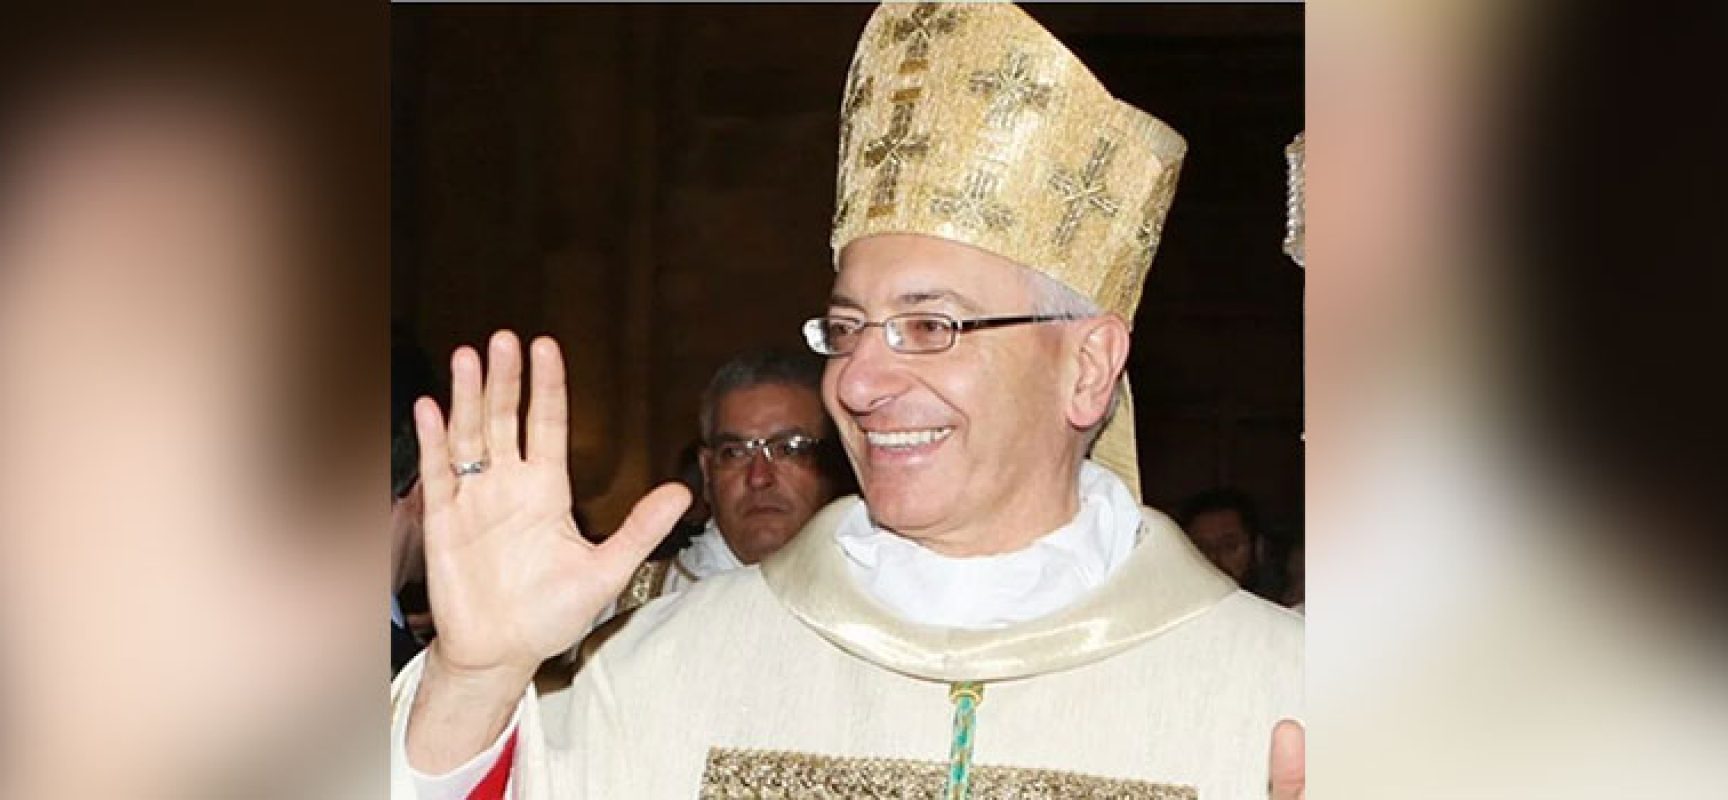 Il messaggio ai fedeli dell’Arcivescovo D’Ascenzo: “Gesù è la verità del Natale”